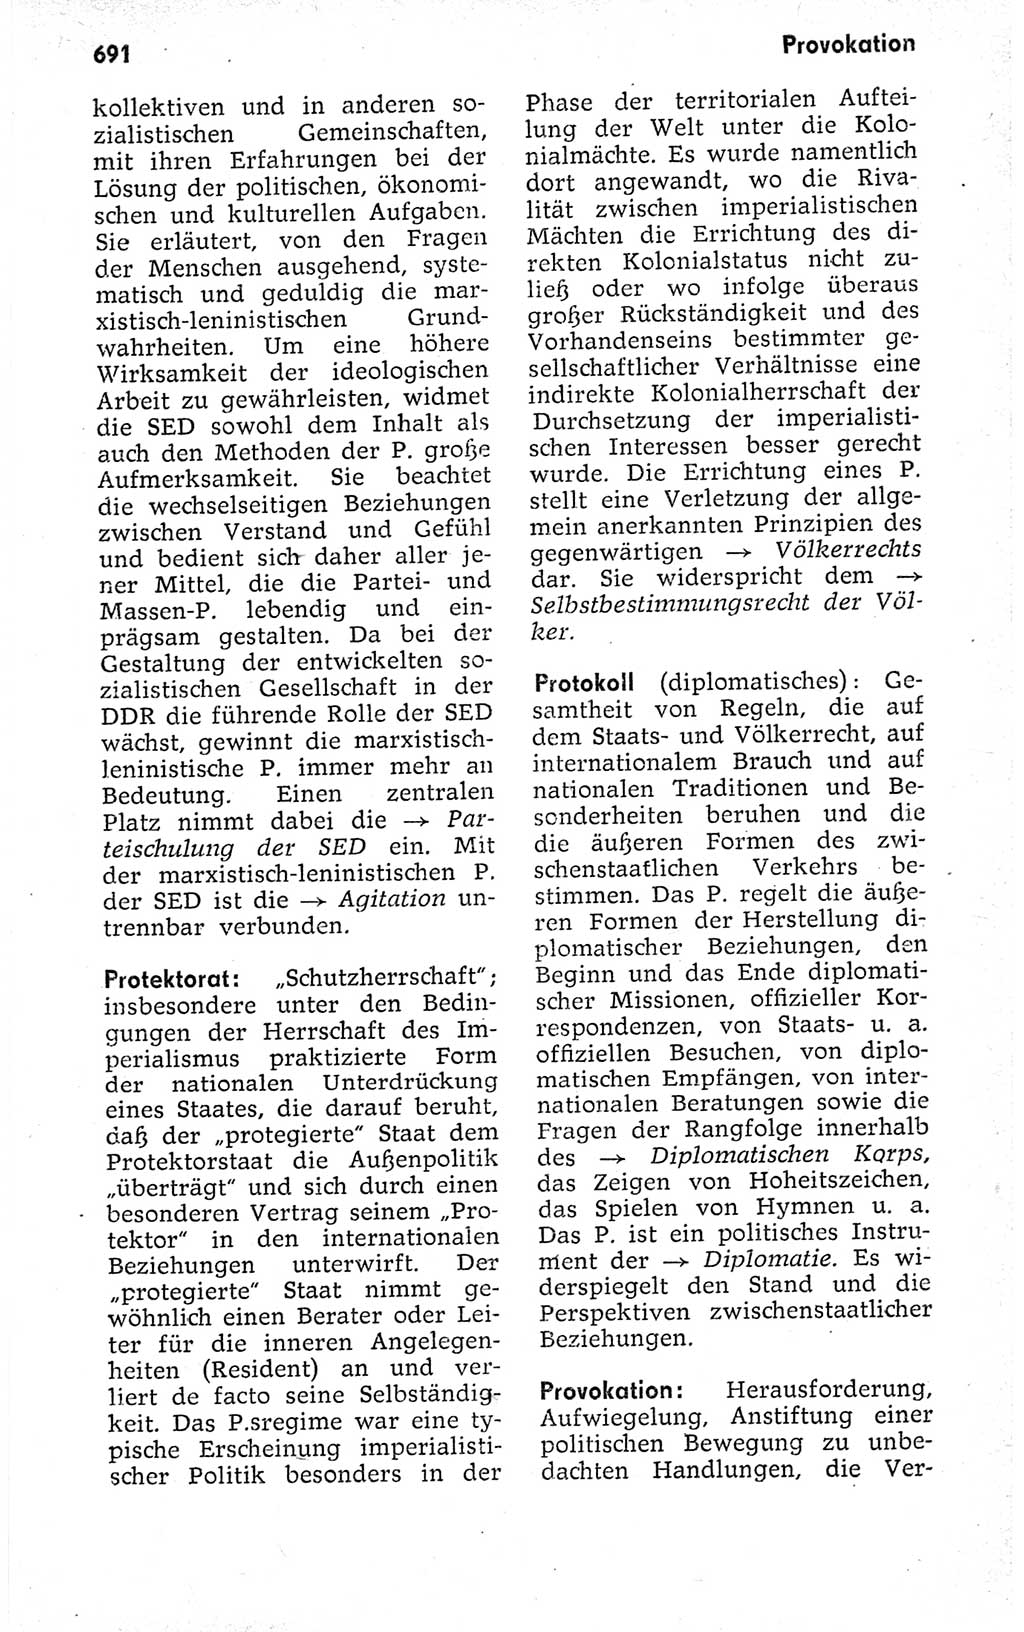 Kleines politisches Wörterbuch [Deutsche Demokratische Republik (DDR)] 1973, Seite 691 (Kl. pol. Wb. DDR 1973, S. 691)